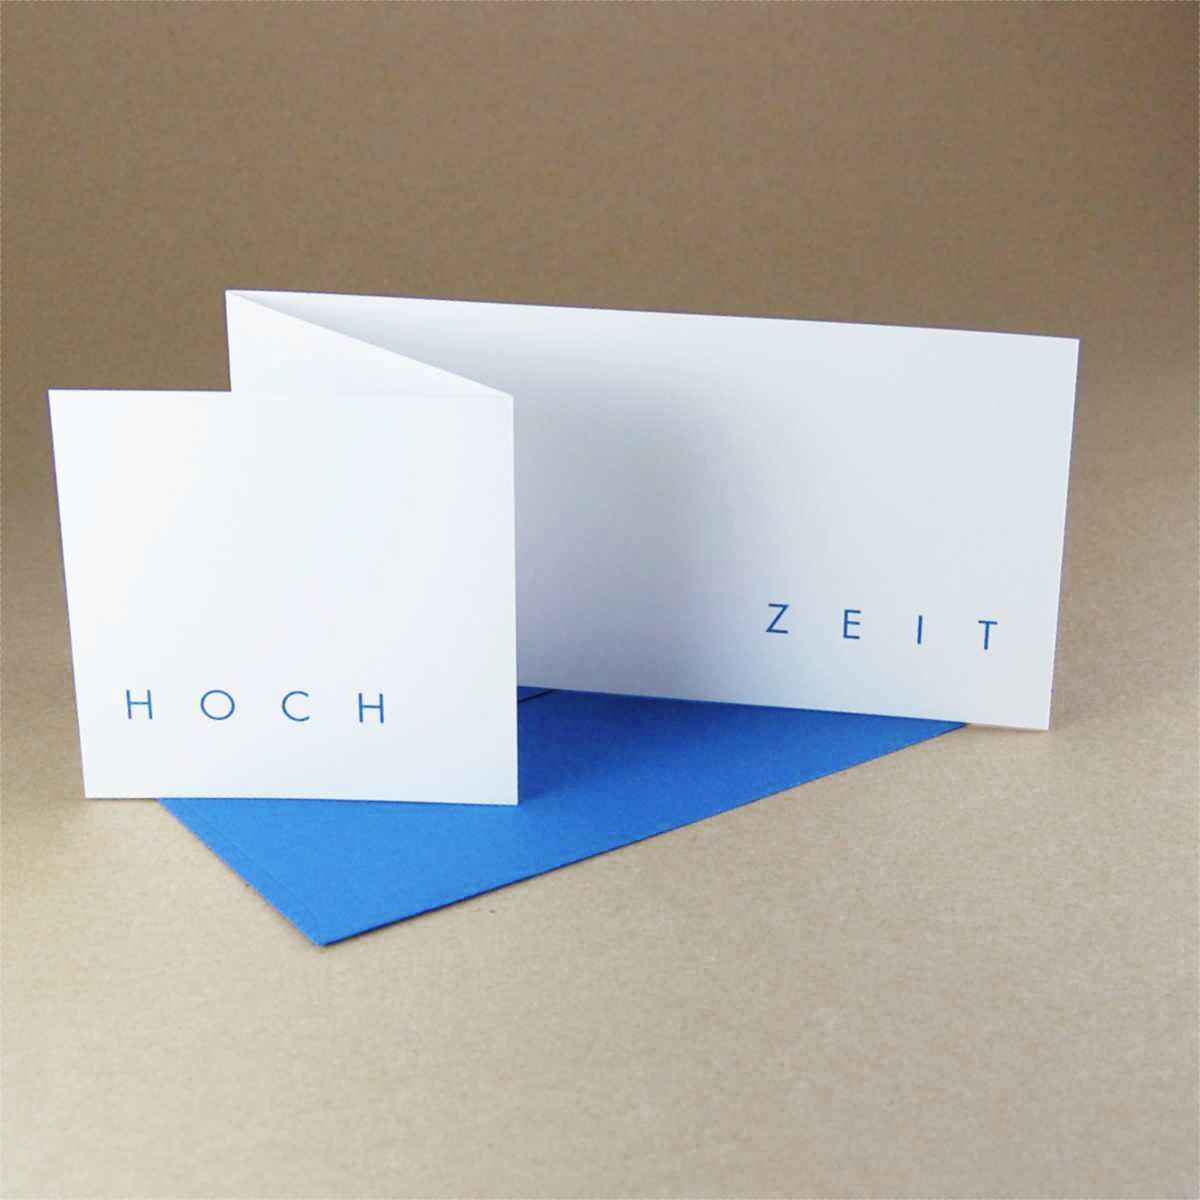 10 Hochzeitseinladungen mit blauen Kuverts: HOCH ZEIT